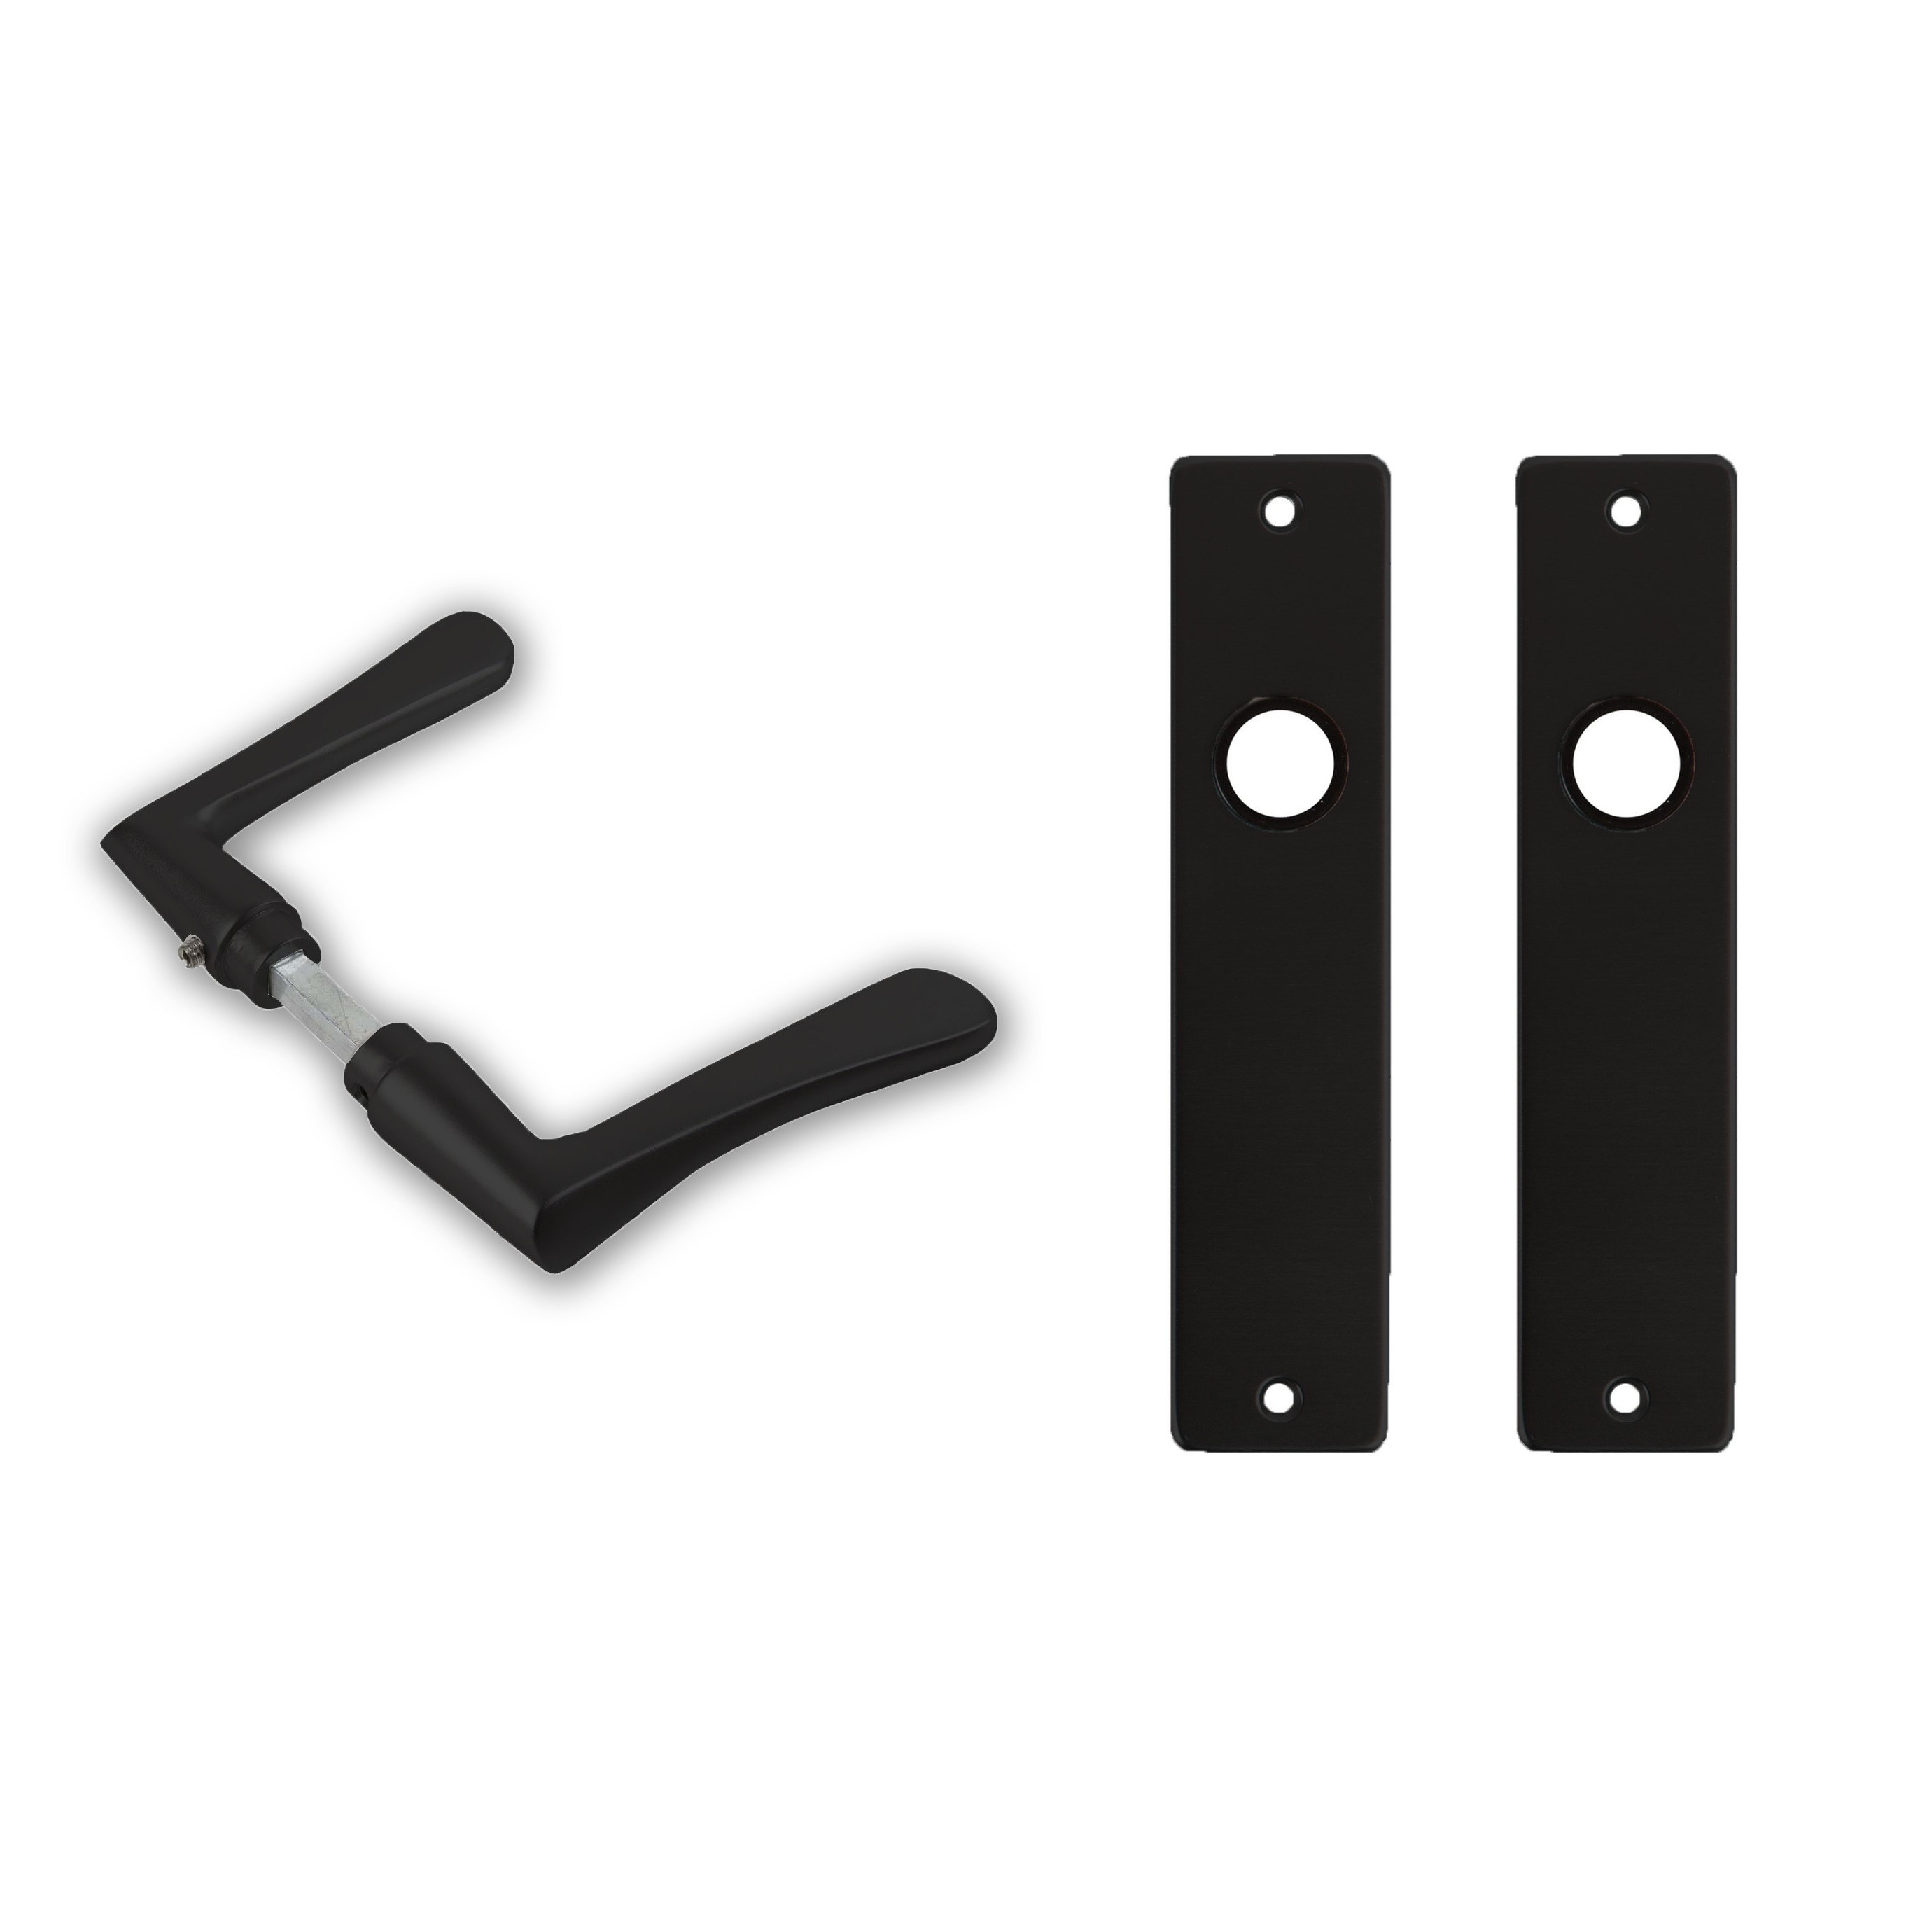 4x paar deurkrukset-deurgarnituur zwart met zwarte vlindermodel deurklinken en deurschilden